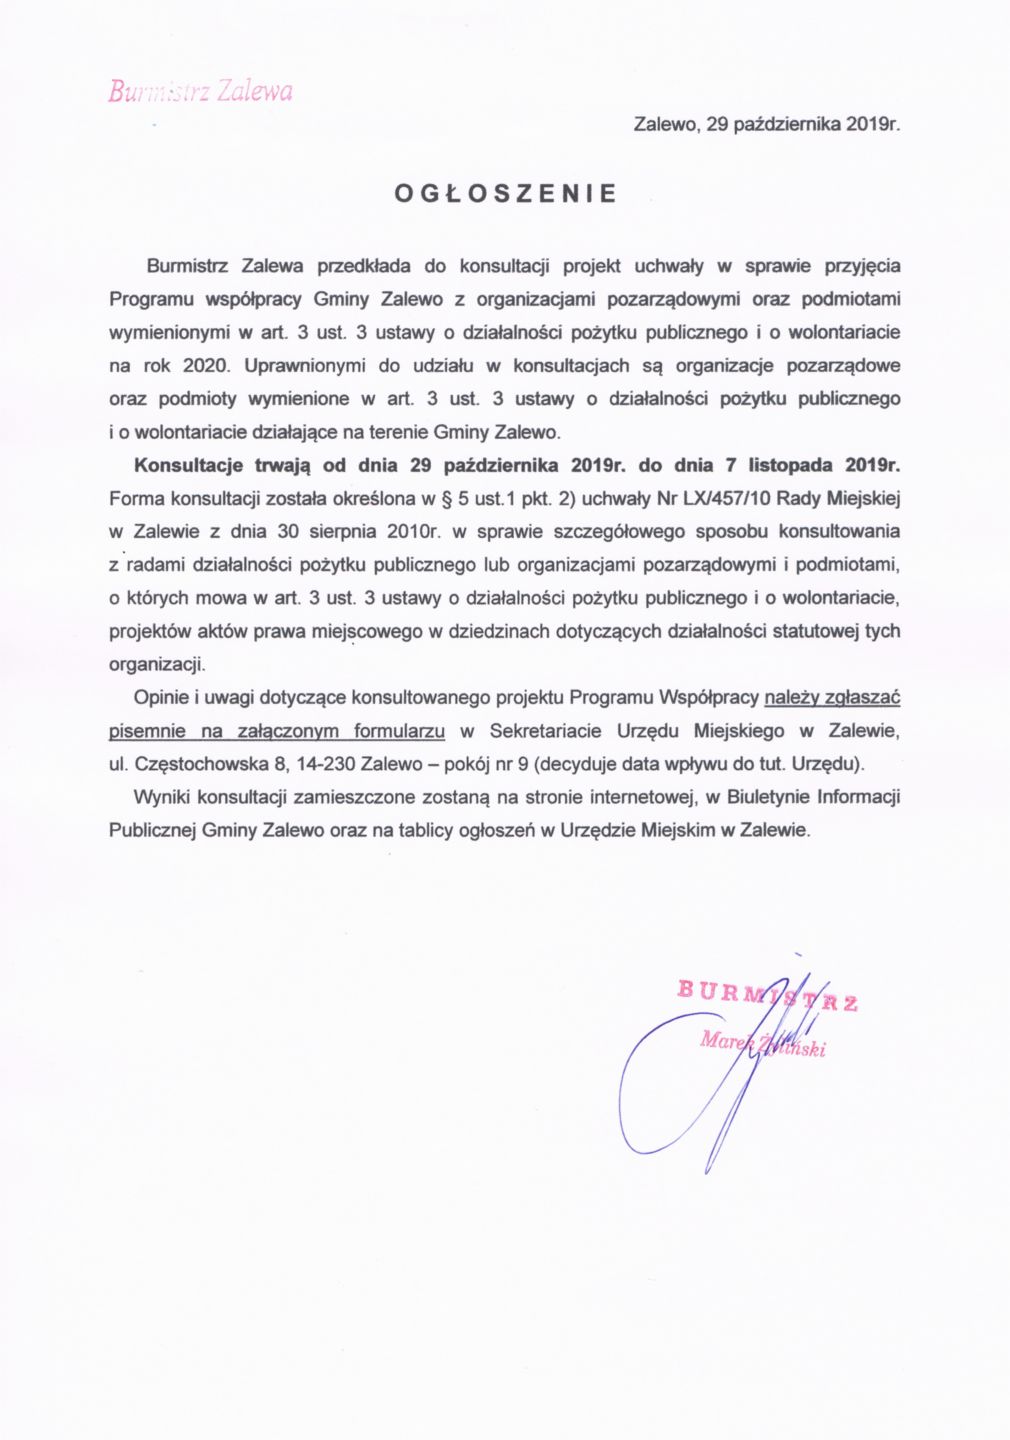 Ogłoszenie Burmistrza Zalewa z dnia 29.10.2019r. w sprawie konsultacji projektu Programu współpracy Gminy Zalewo z organizacjami pozarządowymi na rok 2020